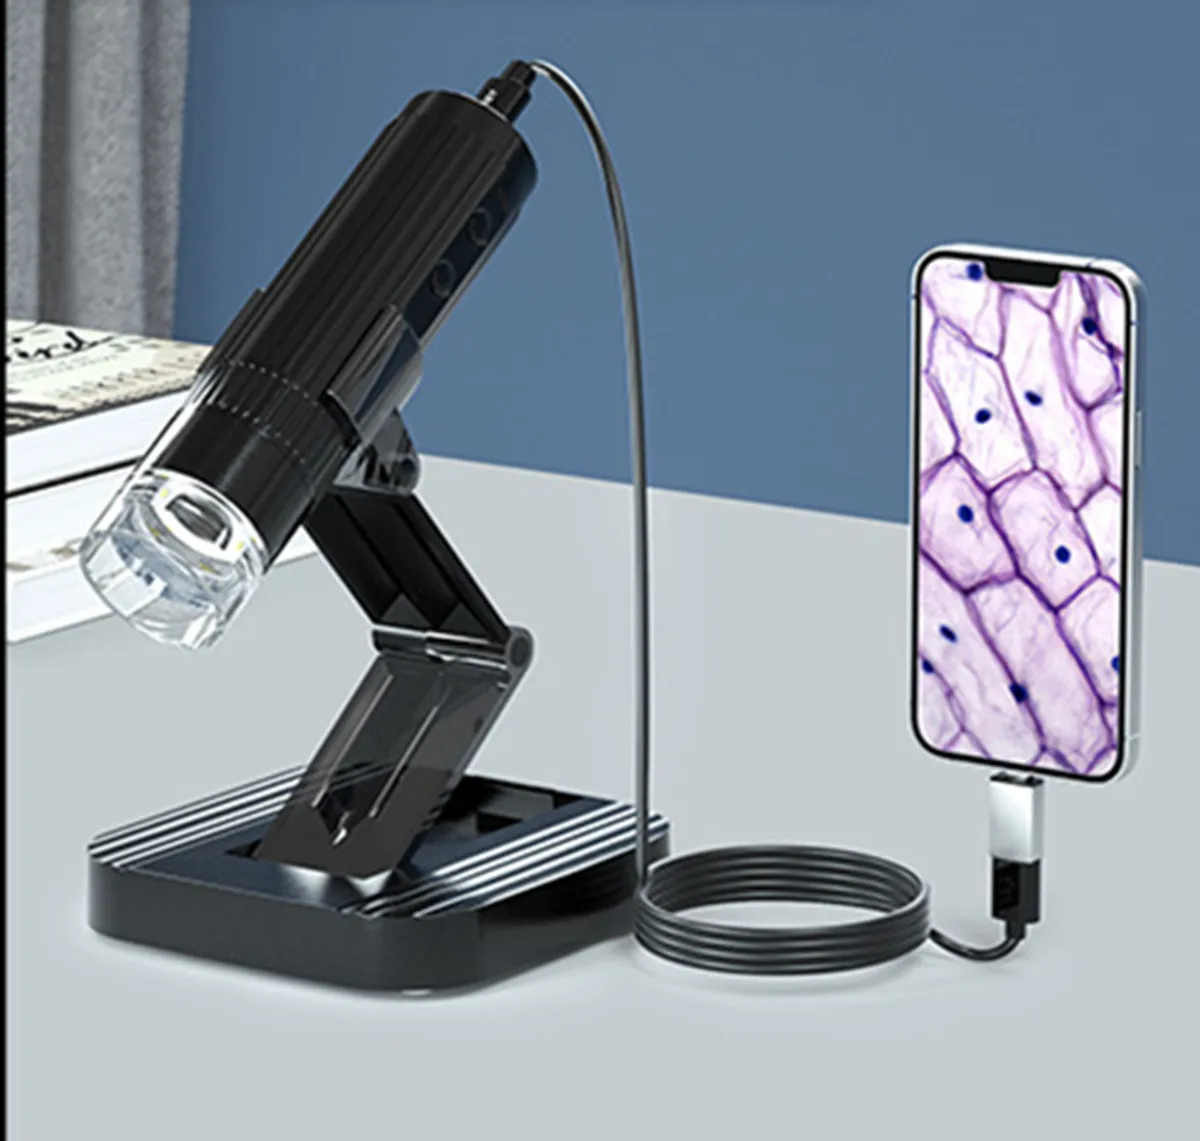 2MP 1080P 50-1000-Кратный зум USB/WIFI Цифровой микроскоп CMOS Бороскоп Инспекционный Ручной эндоскоп для проверки печатных плат Камера отоскопа